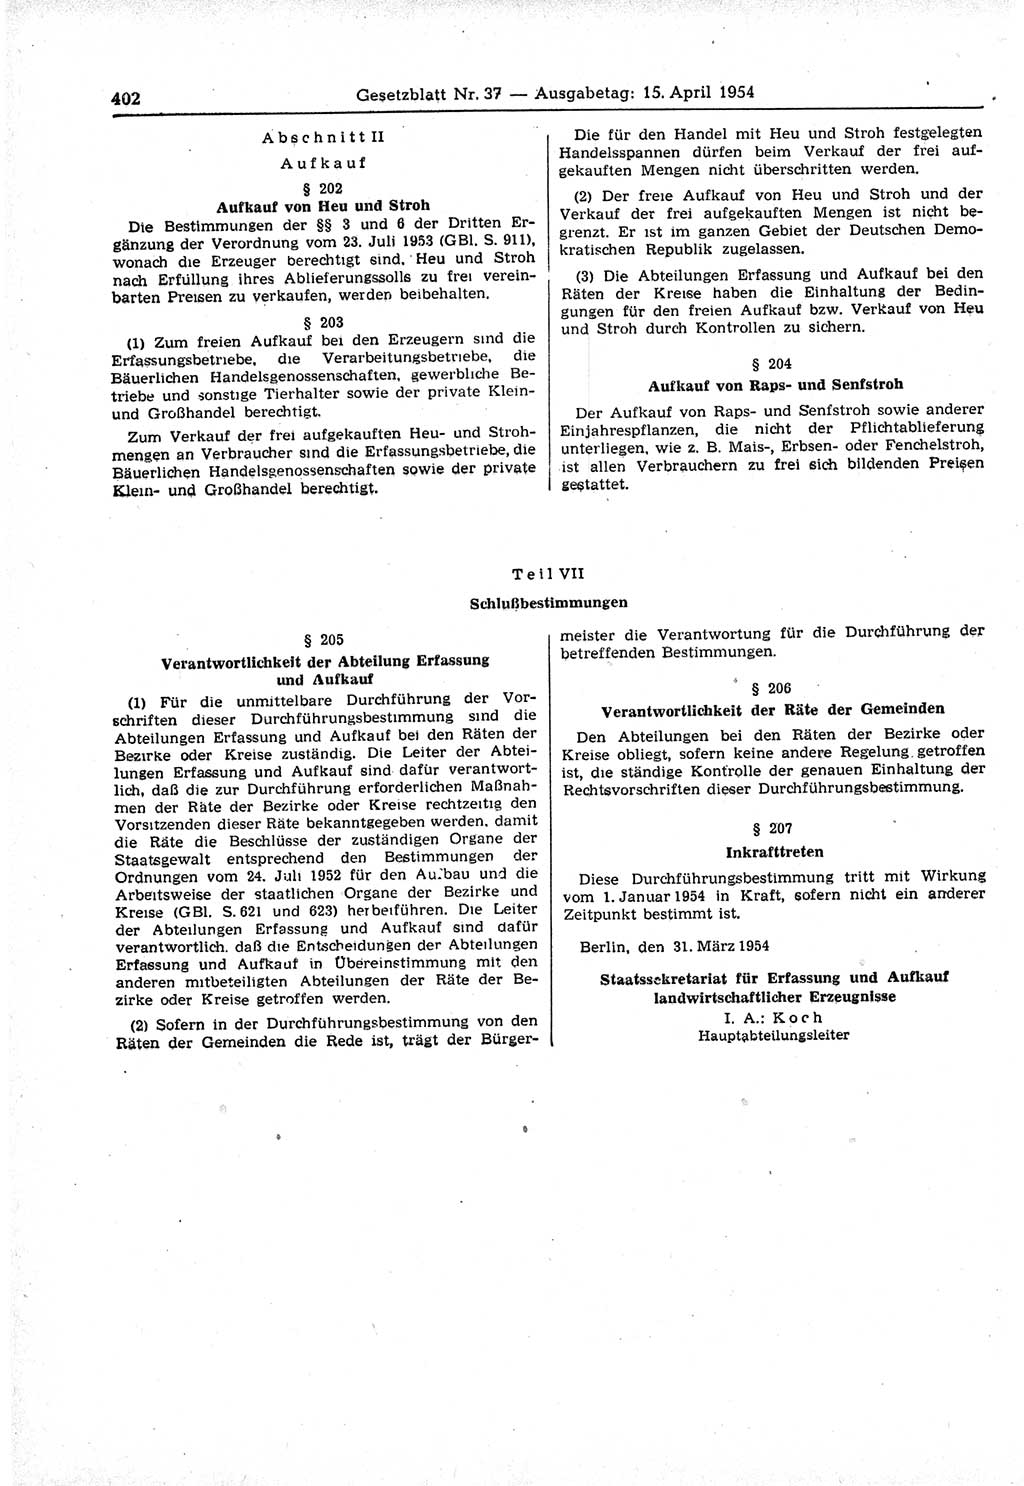 Gesetzblatt (GBl.) der Deutschen Demokratischen Republik (DDR) 1954, Seite 402 (GBl. DDR 1954, S. 402)